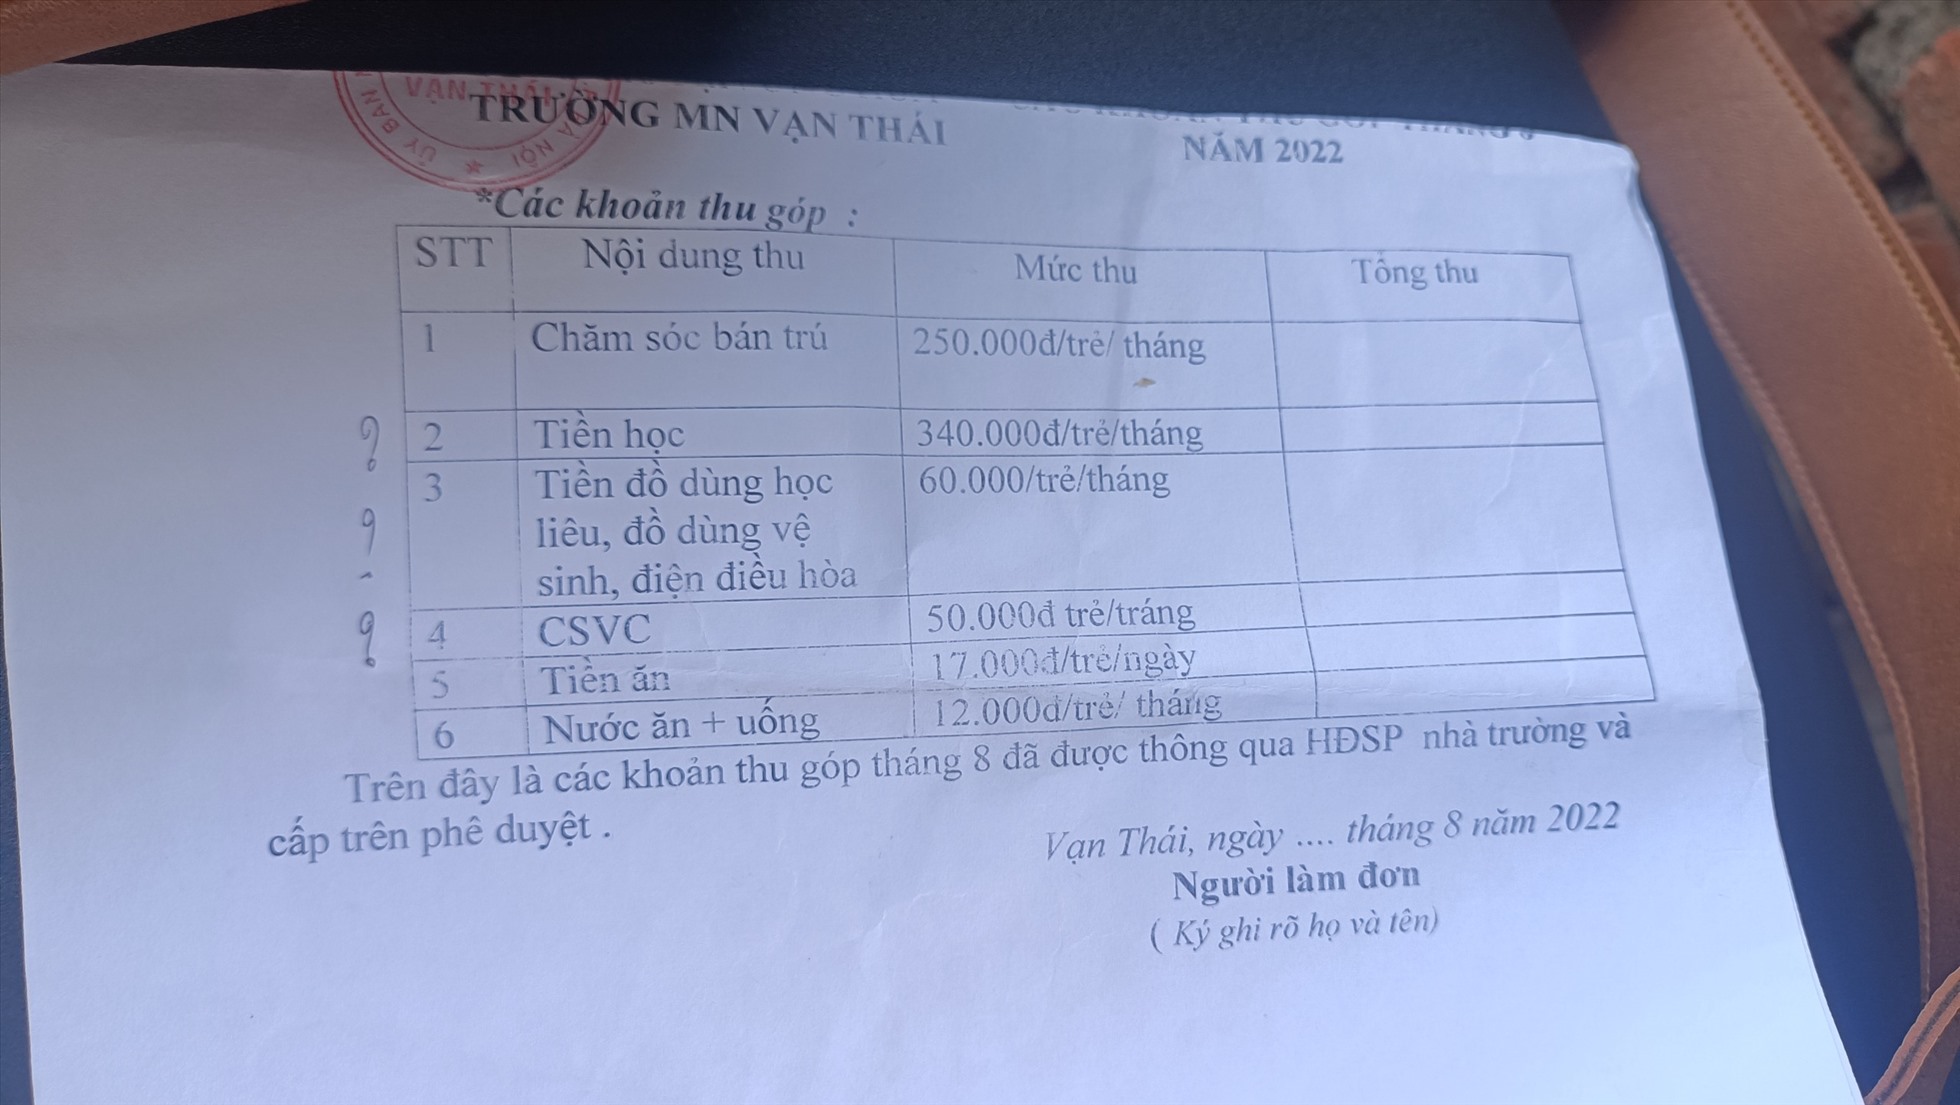 Danh mục các khoản thu của Trường mầm non Vạn Thái trong tháng 8